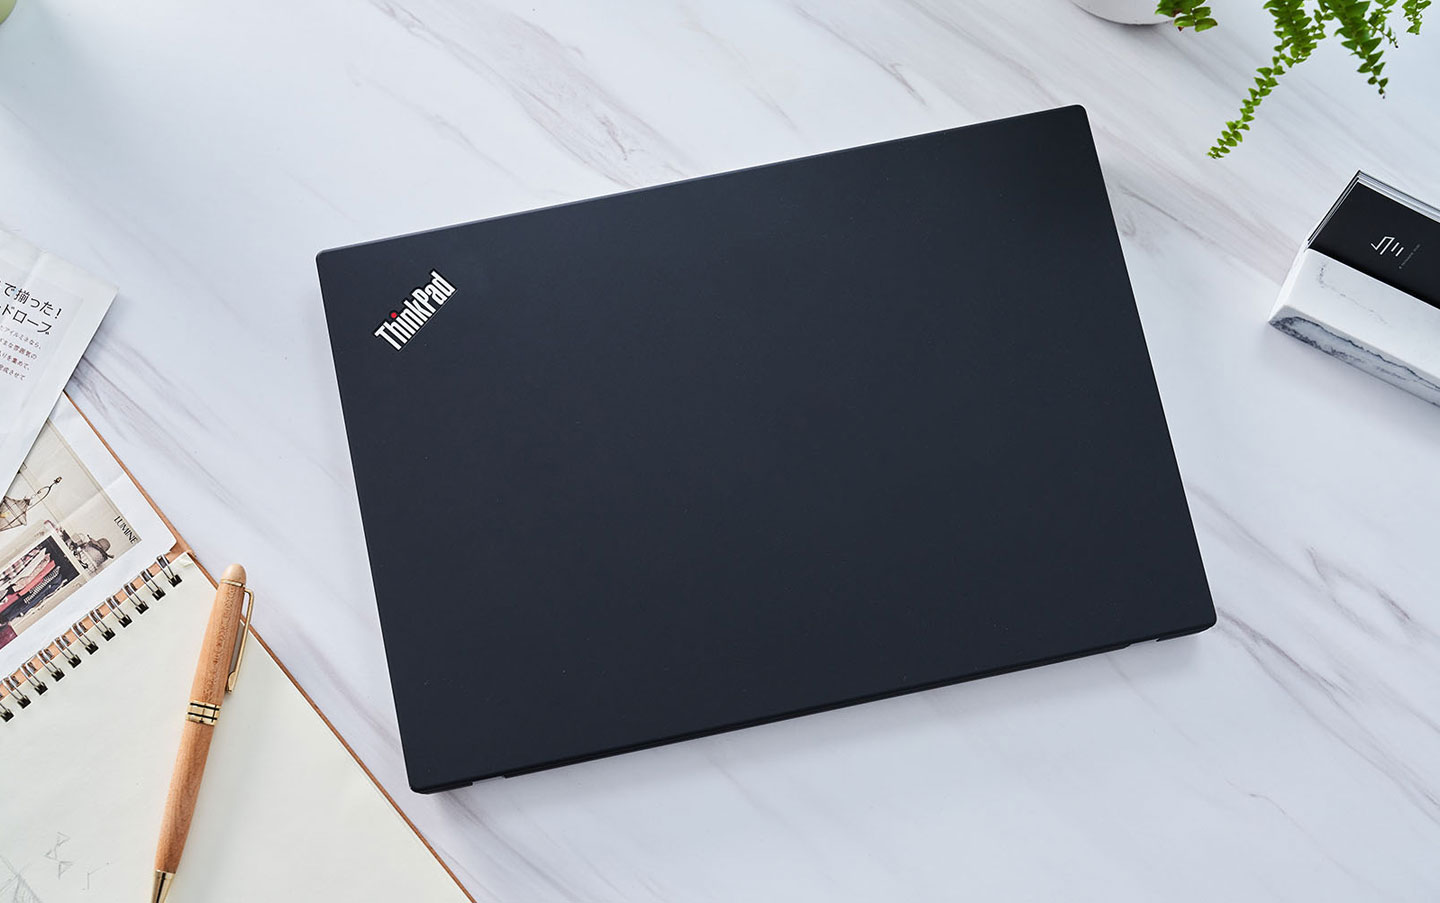 ThinkPad T14 AMD 版機身同樣為全黑色系列，上蓋採用霧面的類膚材質，左上角同樣有 ThinkPad 的經典 LOGO。